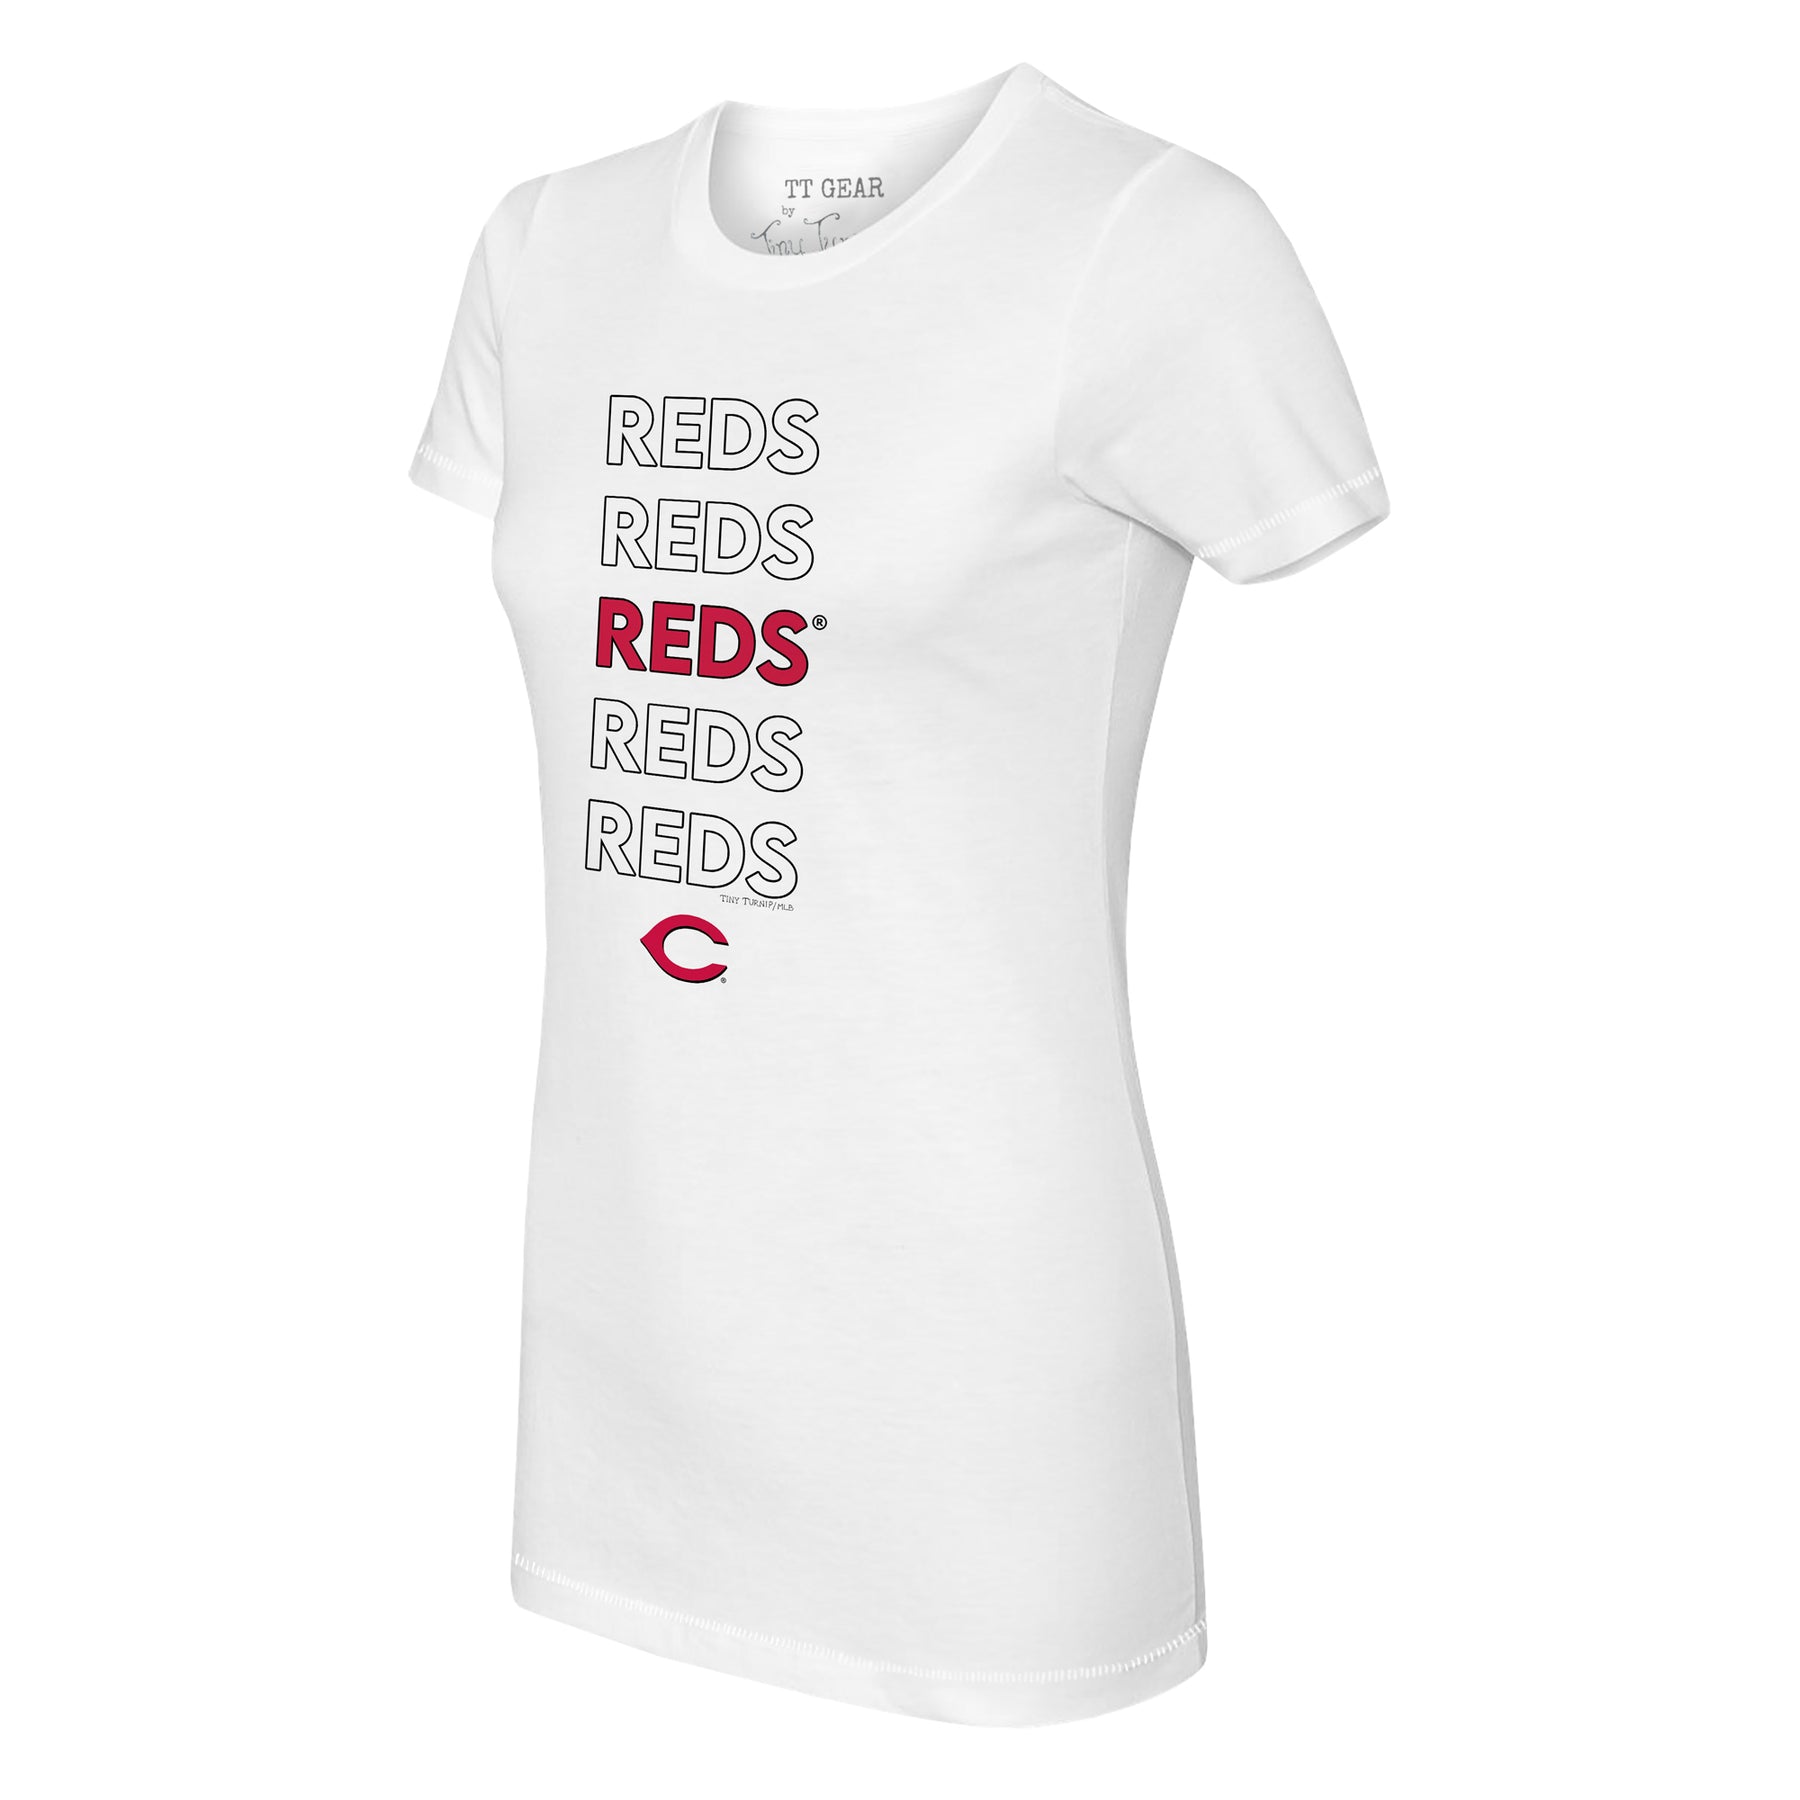 Tiny Turnip Cincinnati Reds Stacked Tee Shirt Women's XS / Red